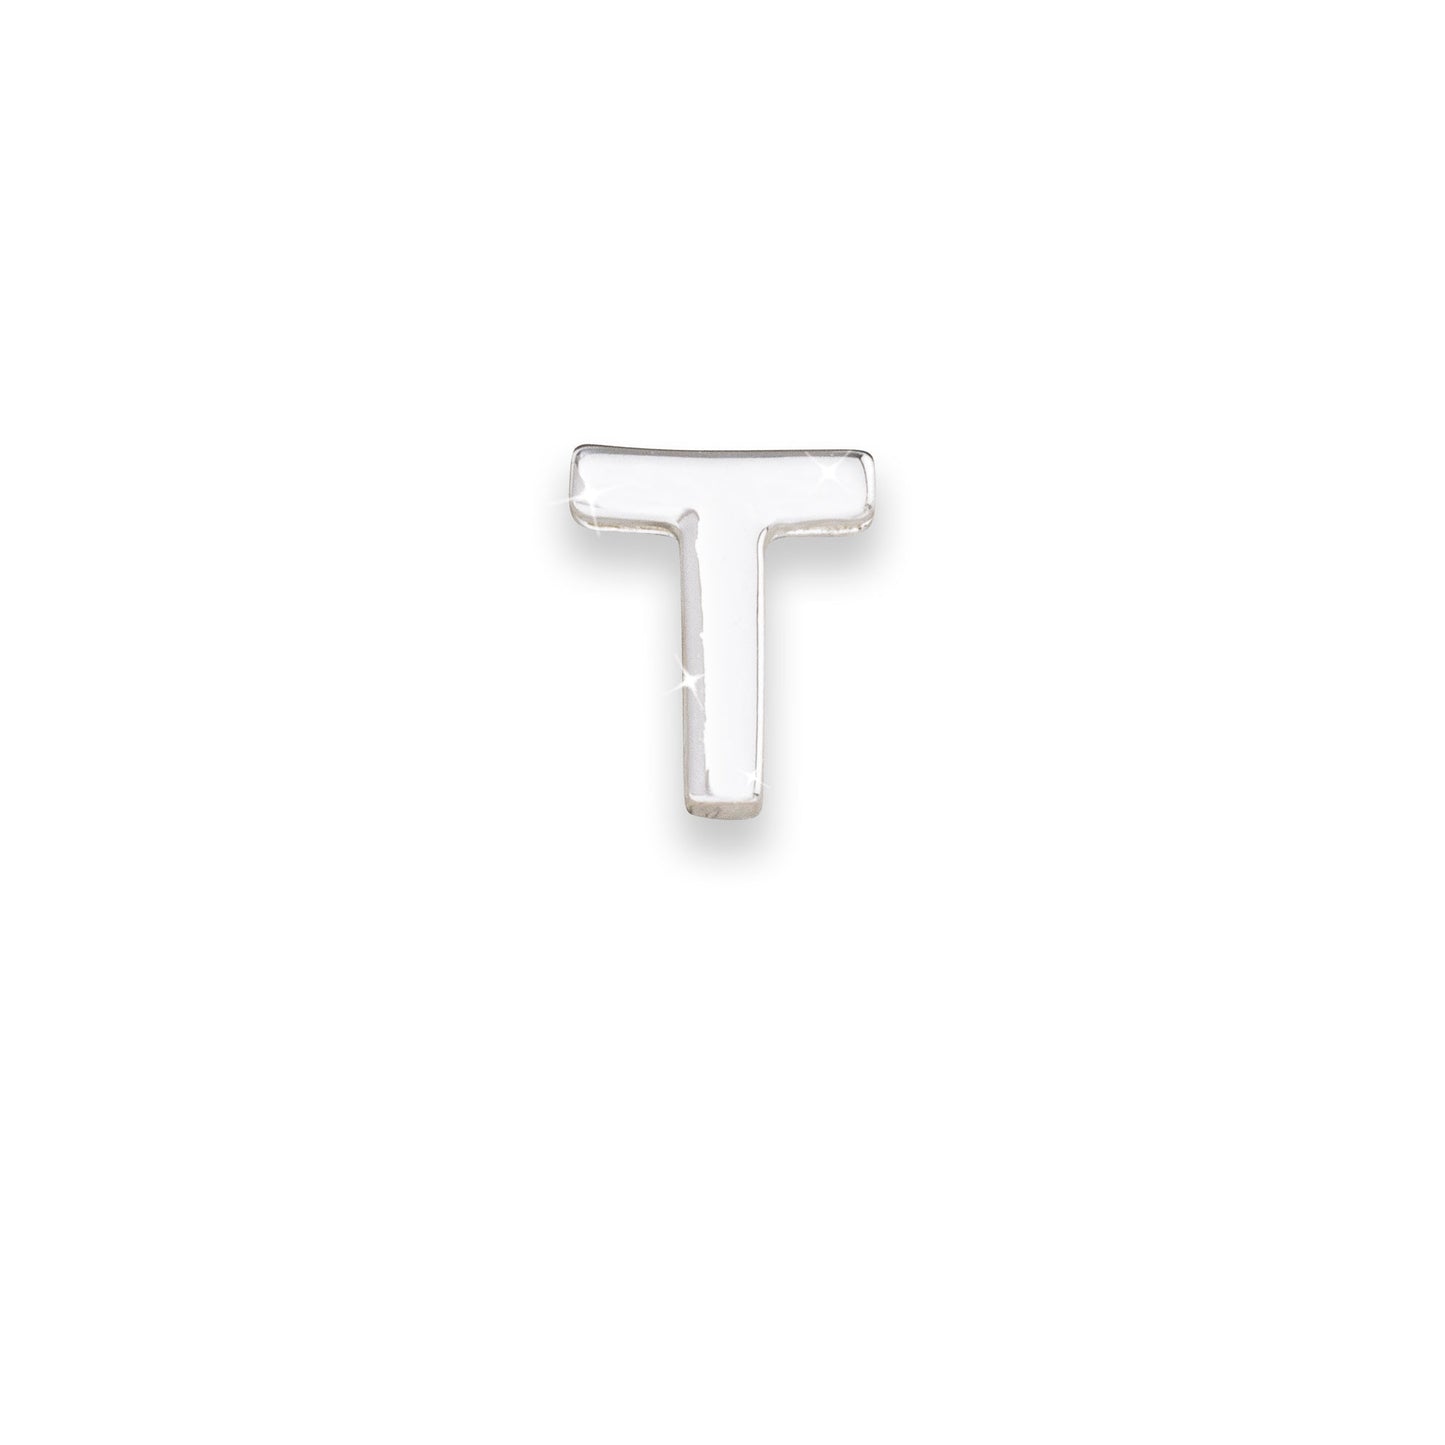 Silver letter T monogram charm for necklaces & bracelets